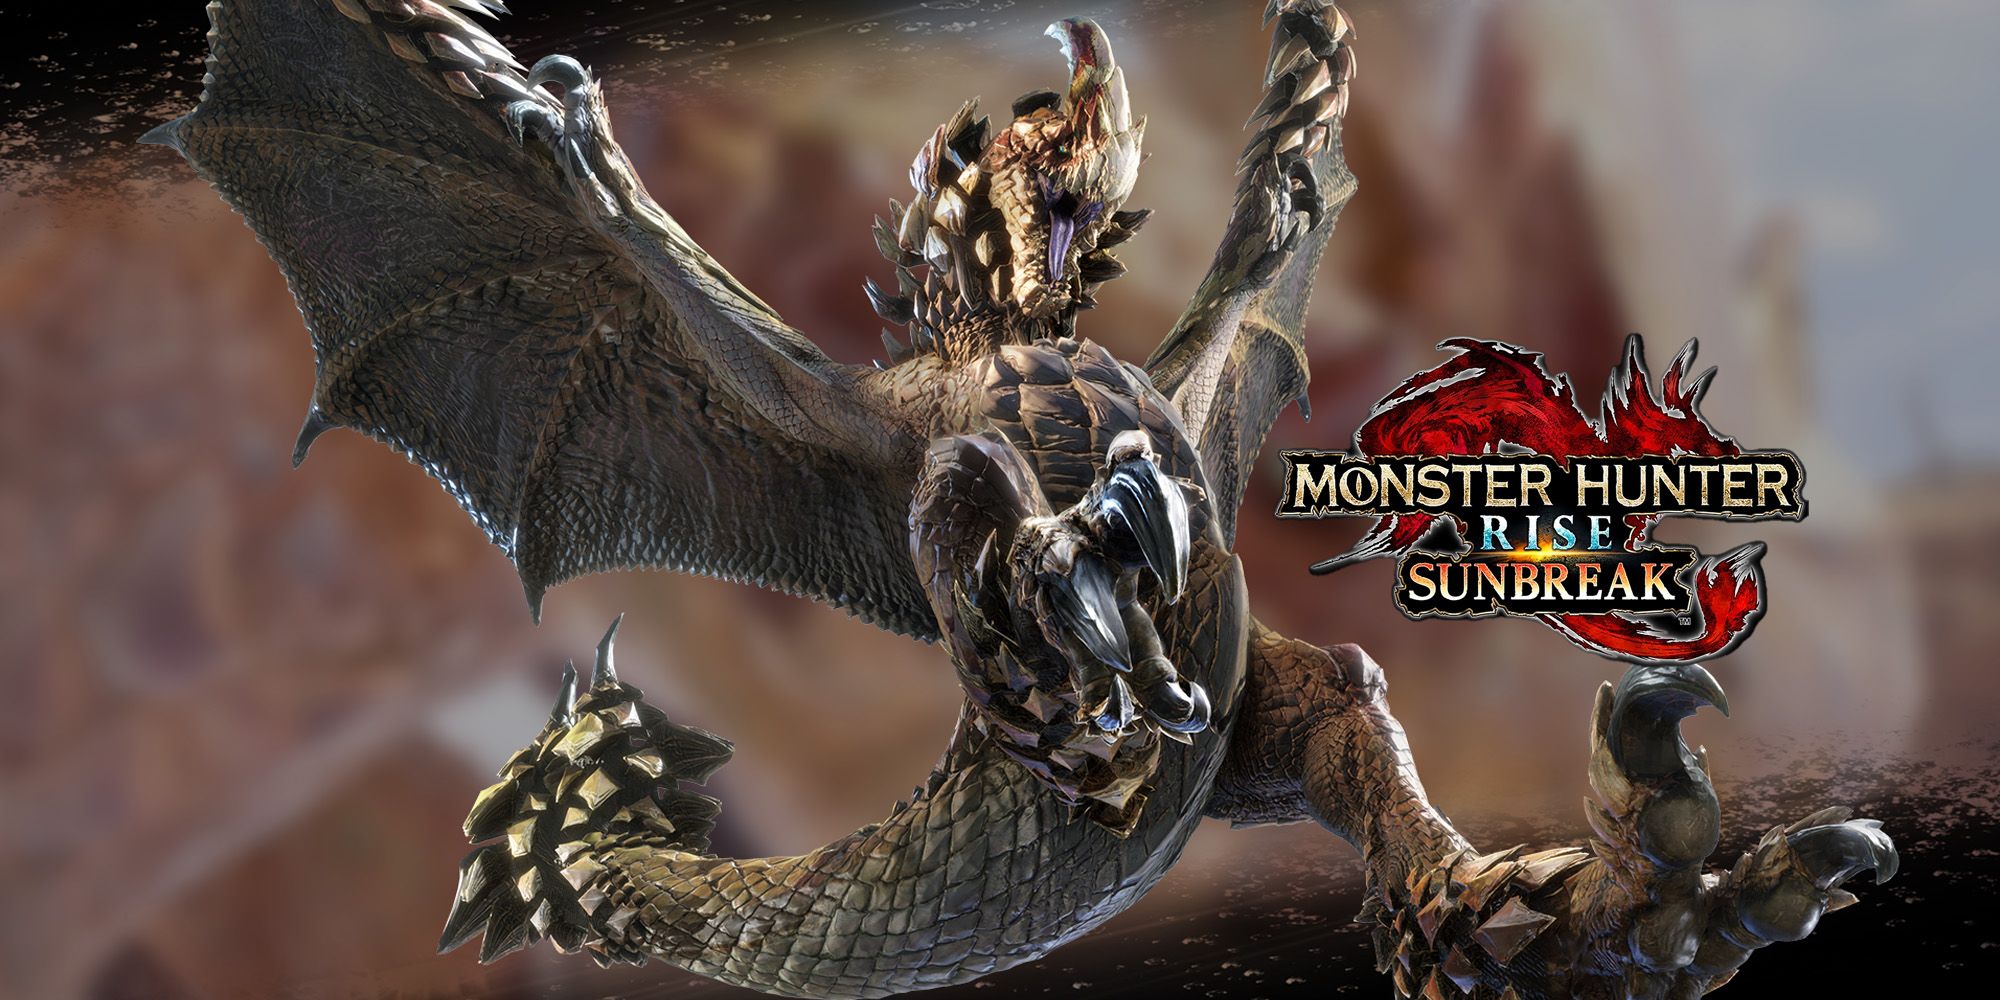 Monster Hunter Rise: Seregios Fight Guide (Tips, Tactics, & Strategies)